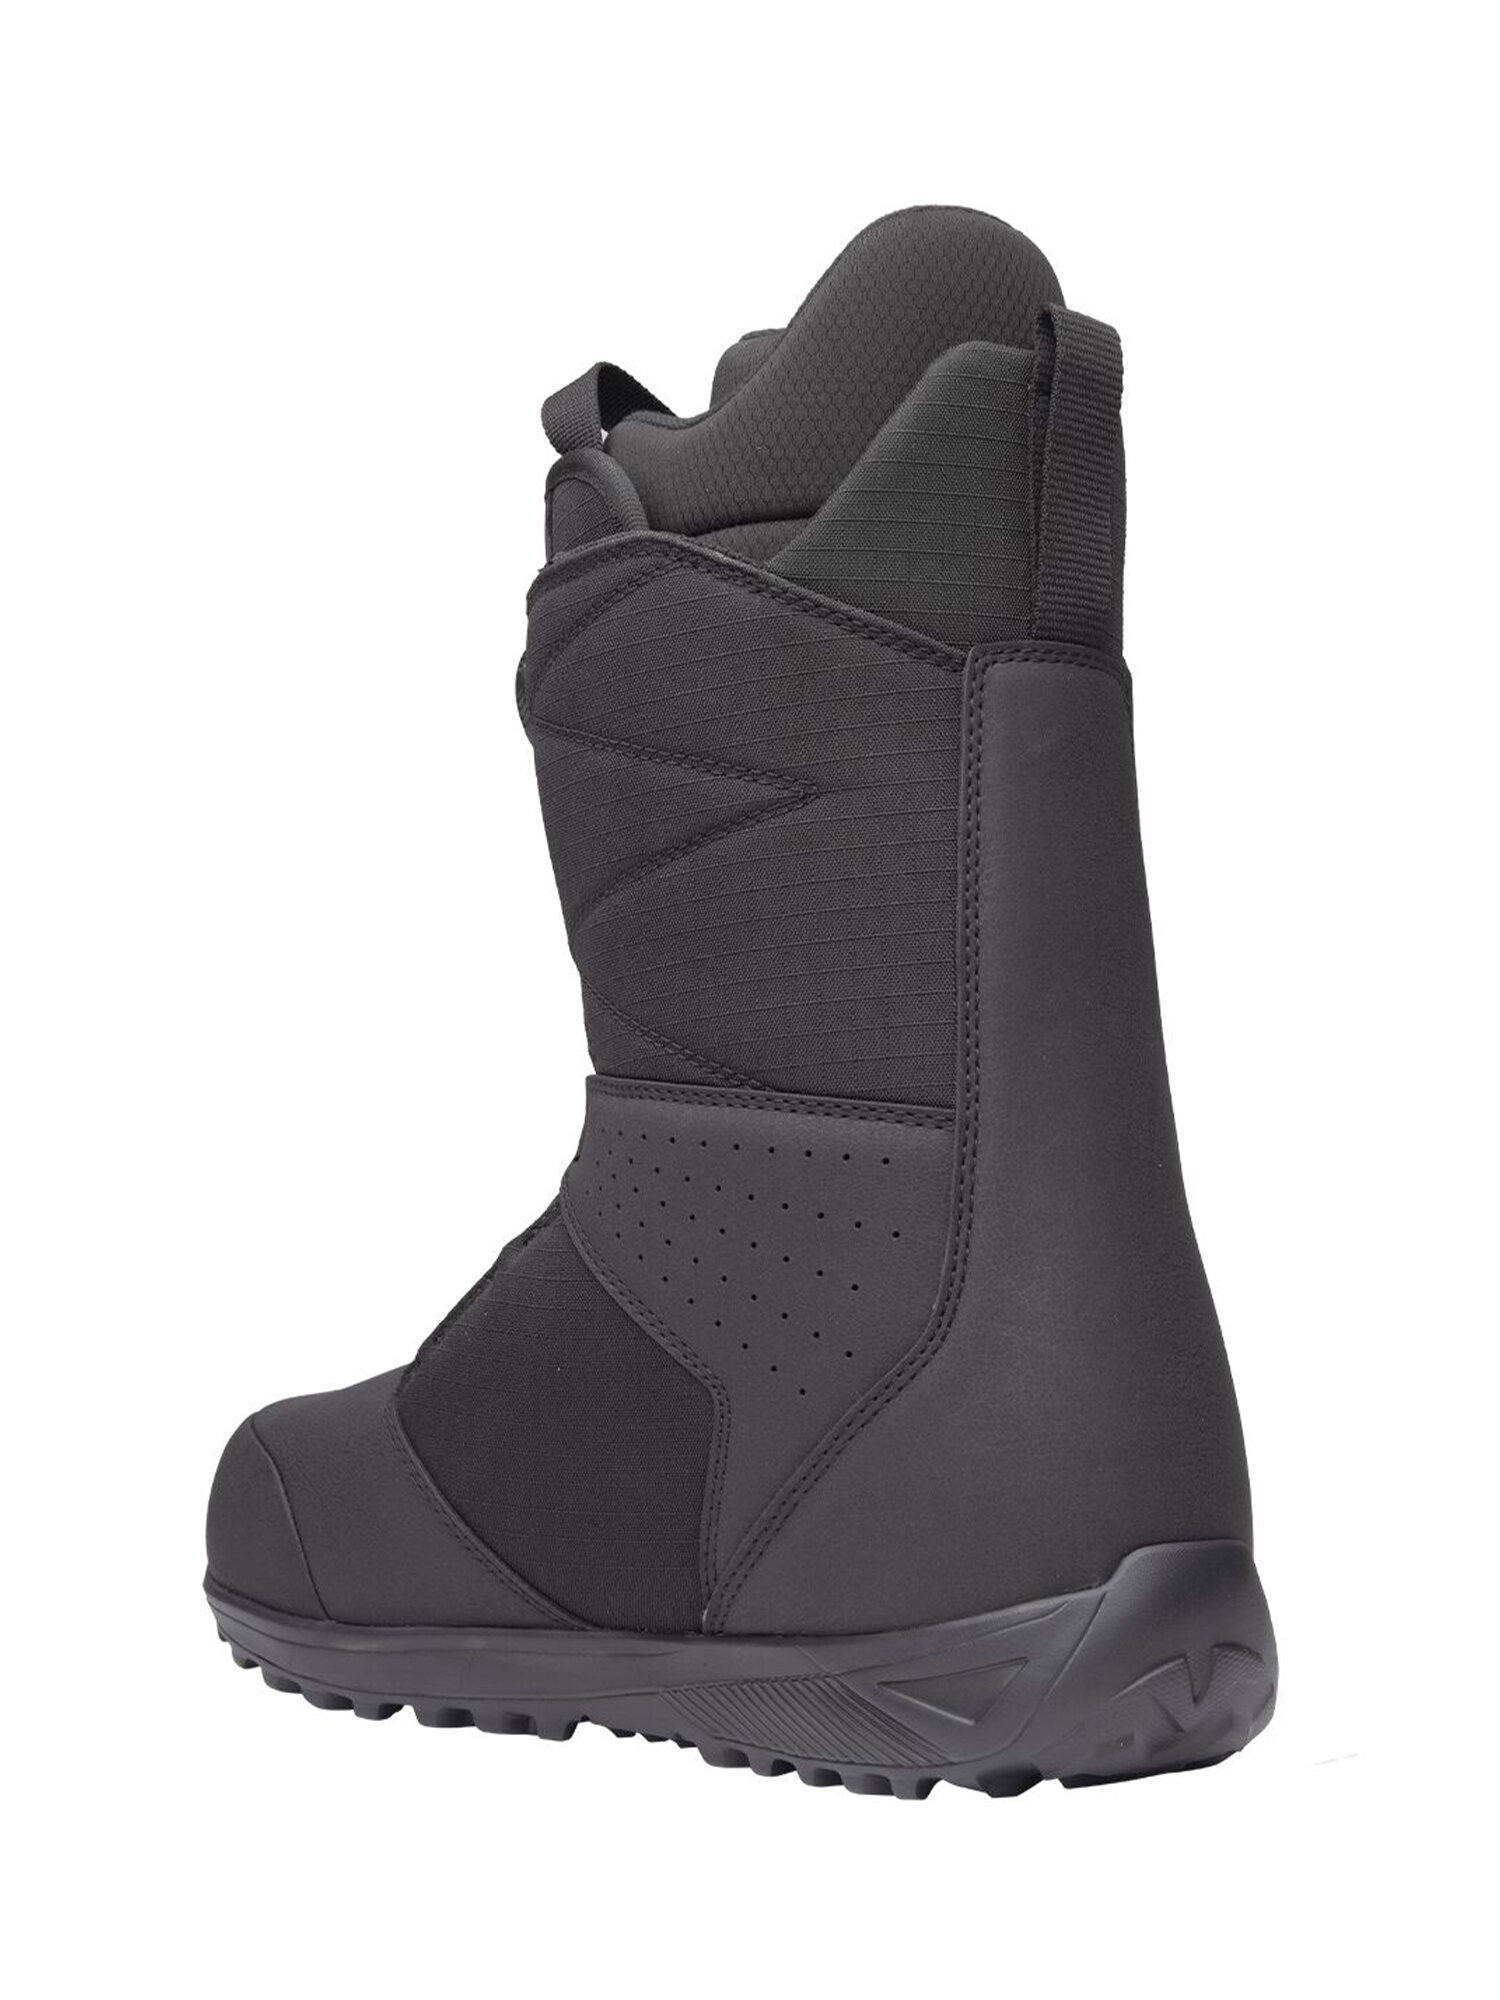 Ботинки для сноуборда NIDECKER Sierra Black (US:9,5)